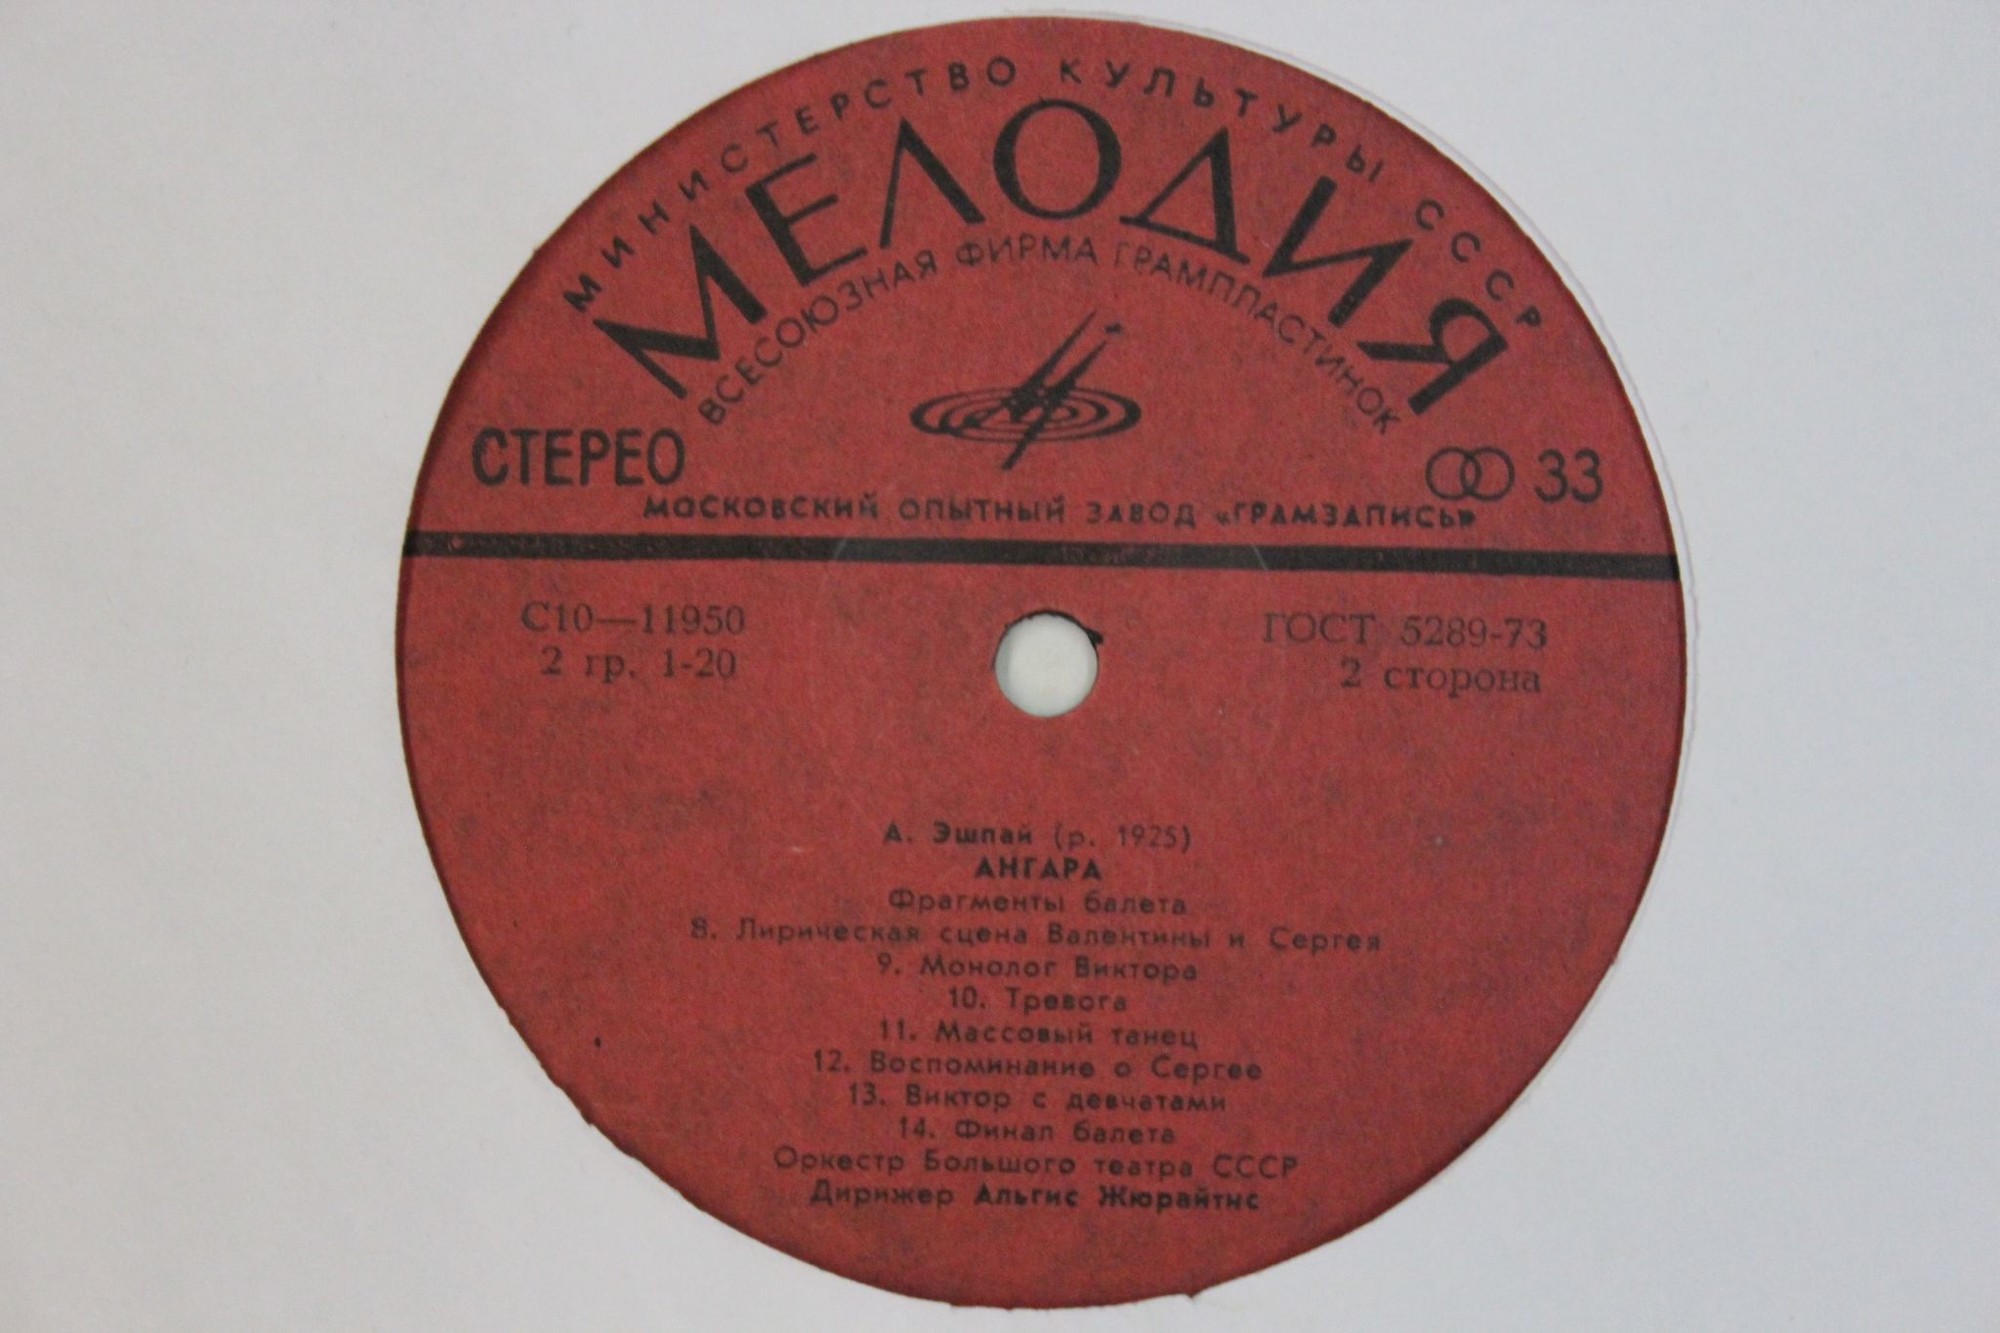 А. ЭШПАЙ (1925): «Ангара», фрагменты балета